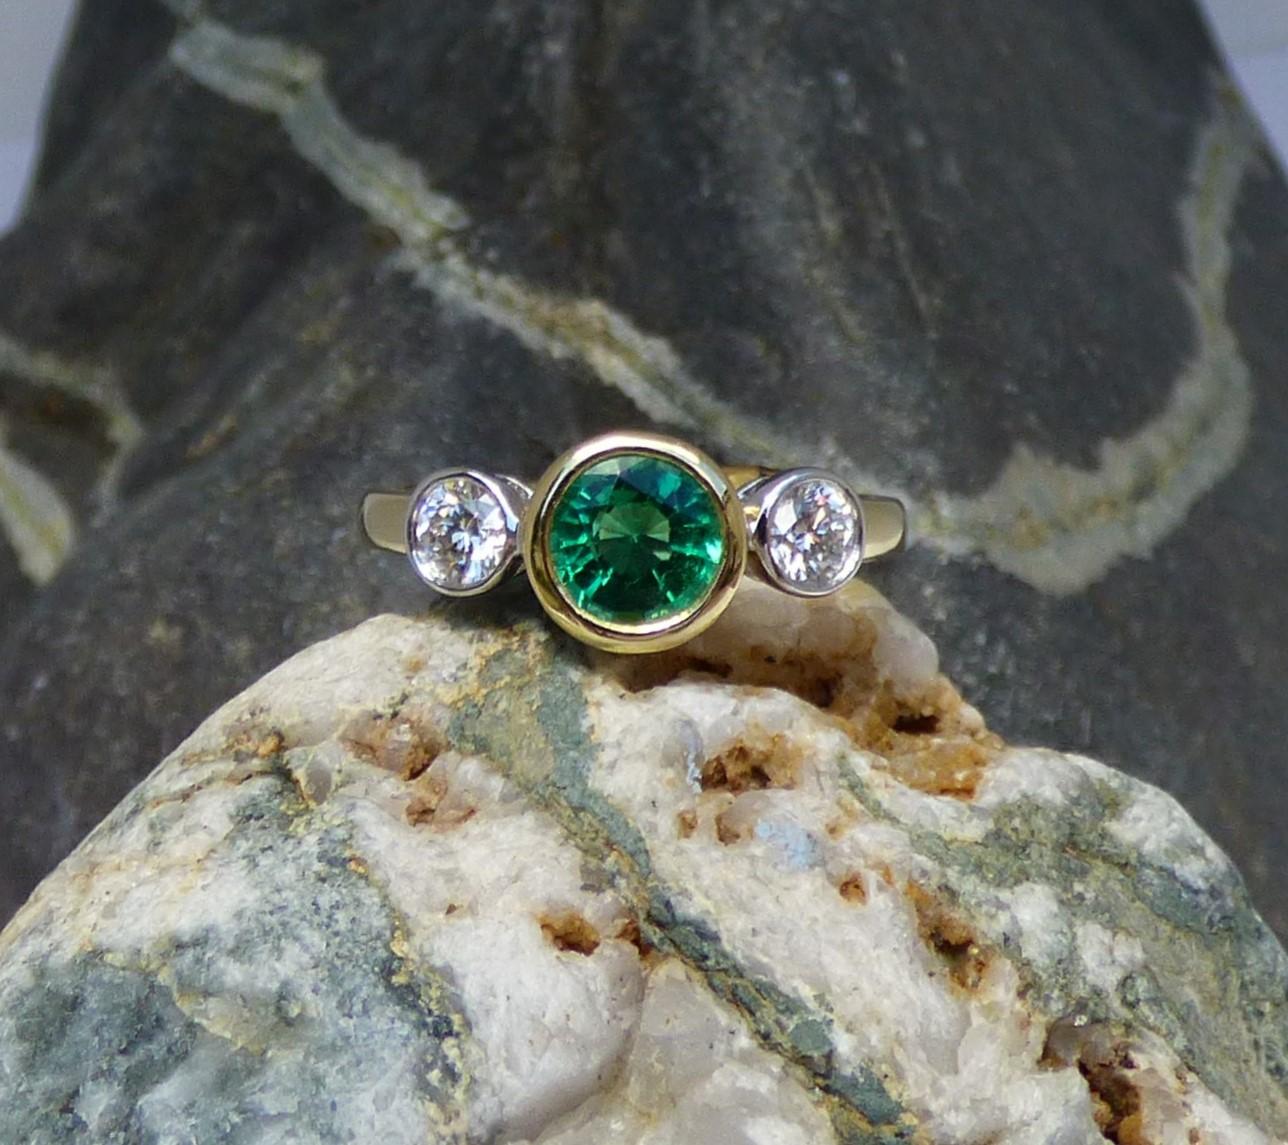 Ein außergewöhnlich heller und farbenfroher Smaragd ist zwischen zwei Diamanten gefasst. Der Smaragd ist 7 mm rund und hat ein Gewicht von 0,85ct. Die beiden Diamanten haben ein Gesamtgewicht von 0,43ct.  Die Steine sind in einem handgefertigten 18K